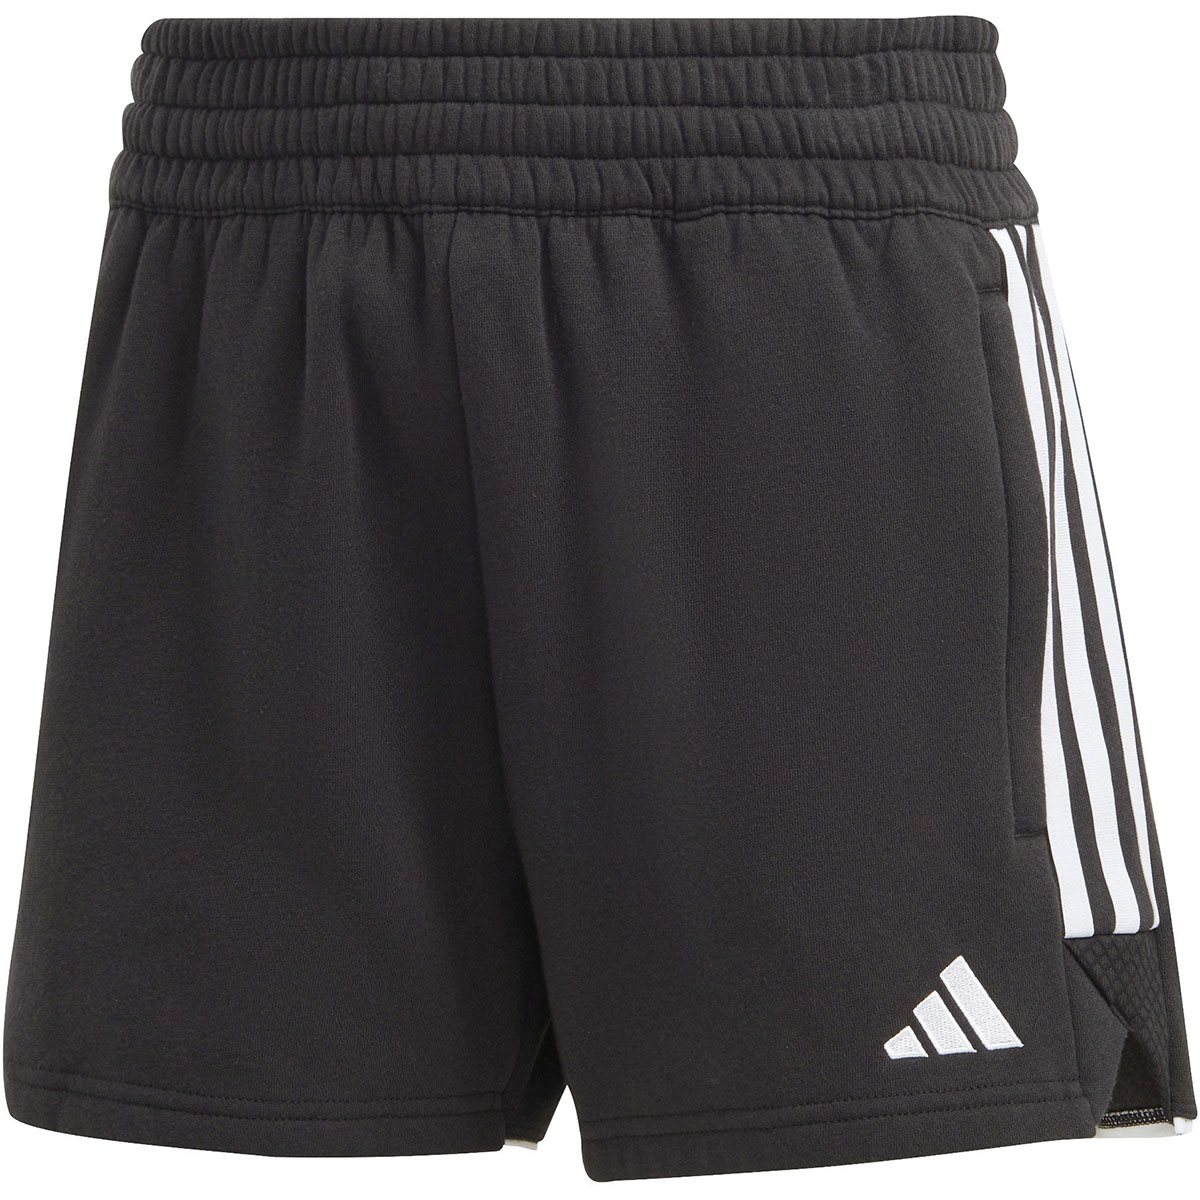 Adidas Damen Sweat Shorts Tiro 23 schwarz